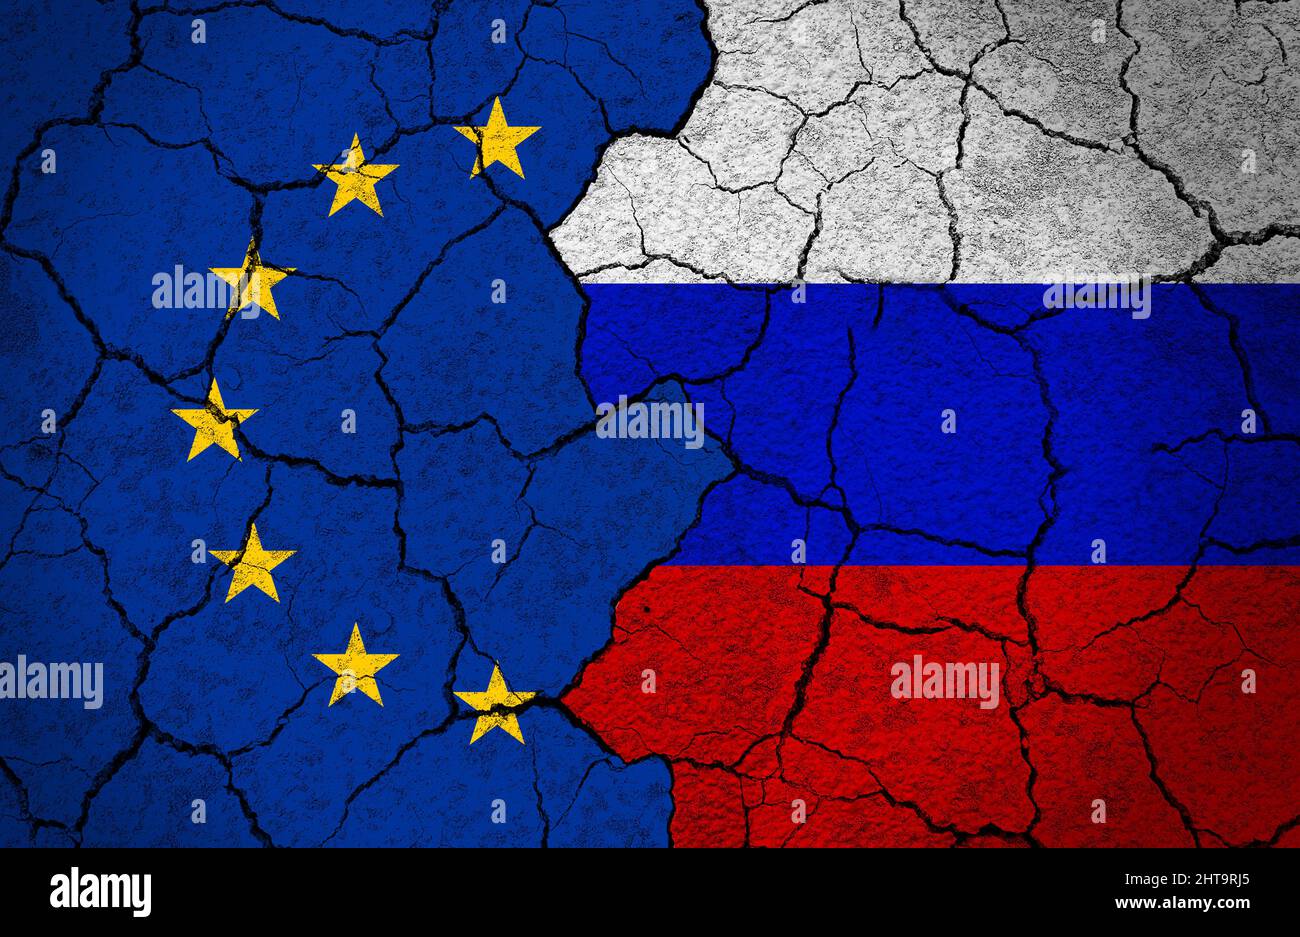 Drapeaux de l'UE et de la Russie peints sur un mur en béton. Concept de crise, rupture des relations, diplomatie entre l'Union européenne et la Russie. Banque D'Images